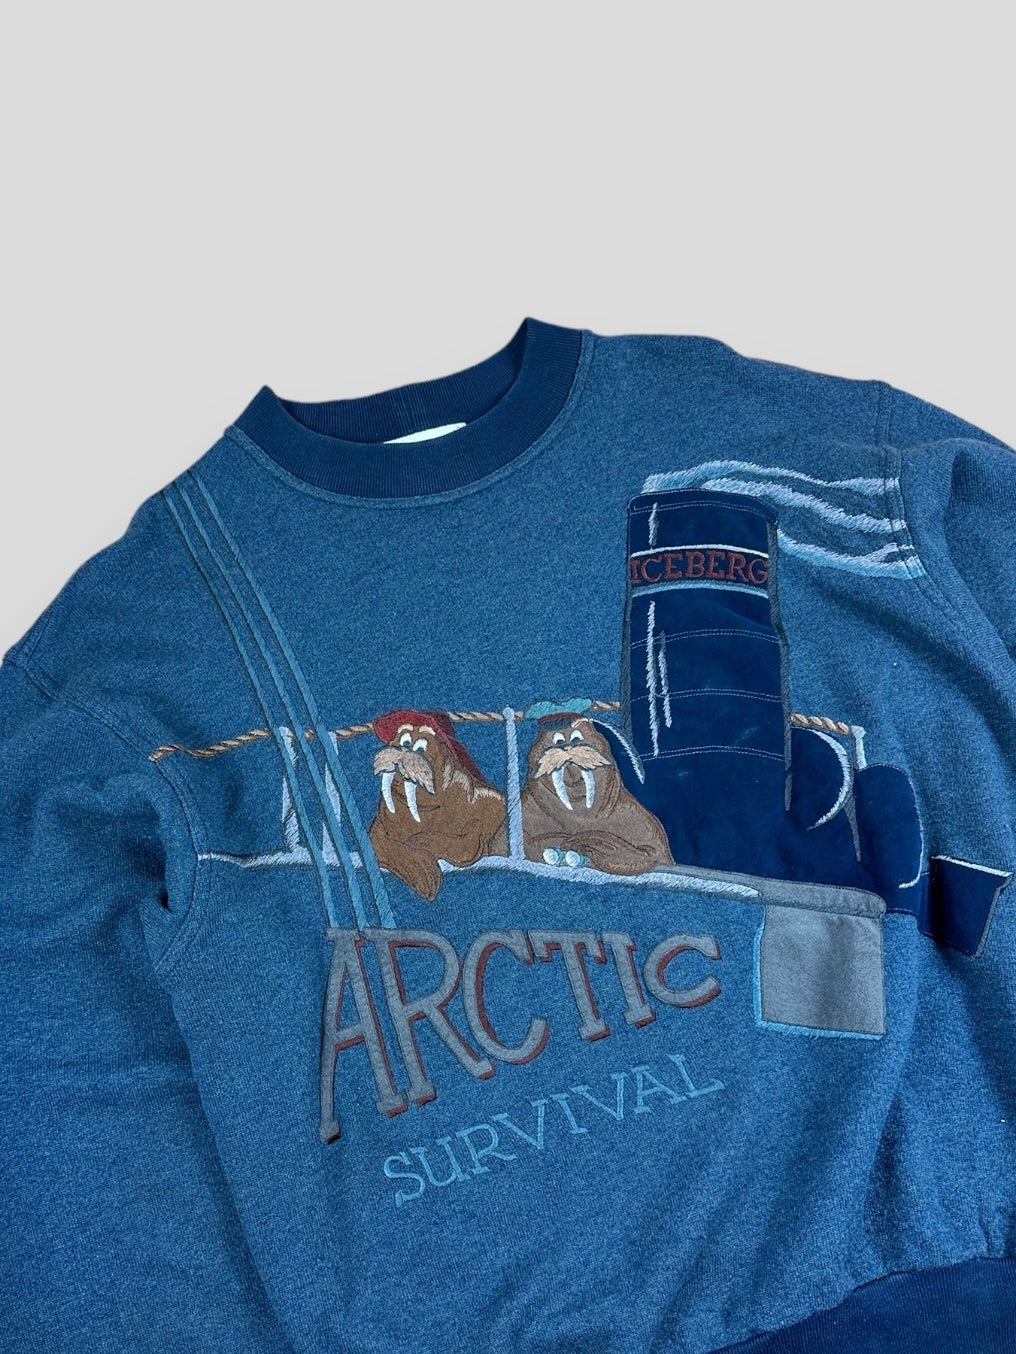 Vintage 90s iceberg sweatshirt